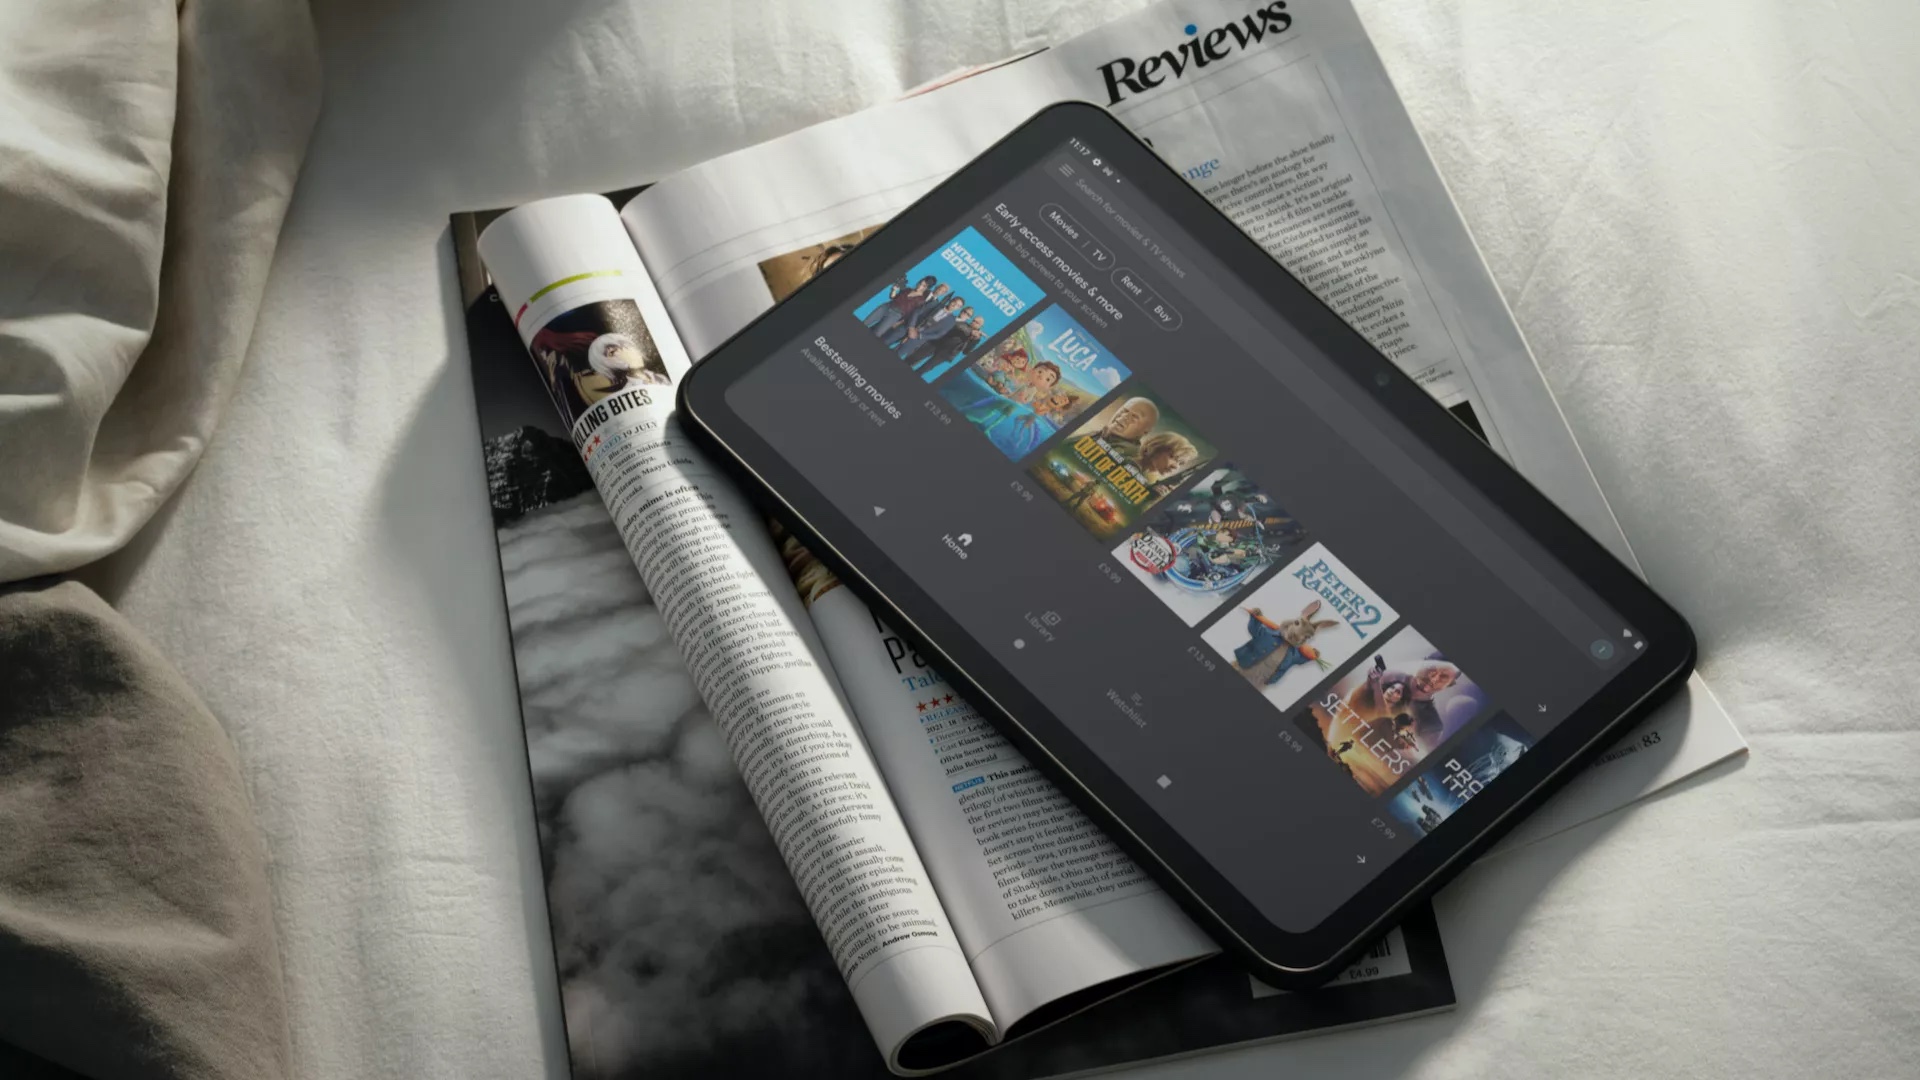 Nokia-T20-tablet-on-magazines.jpeg.jpg